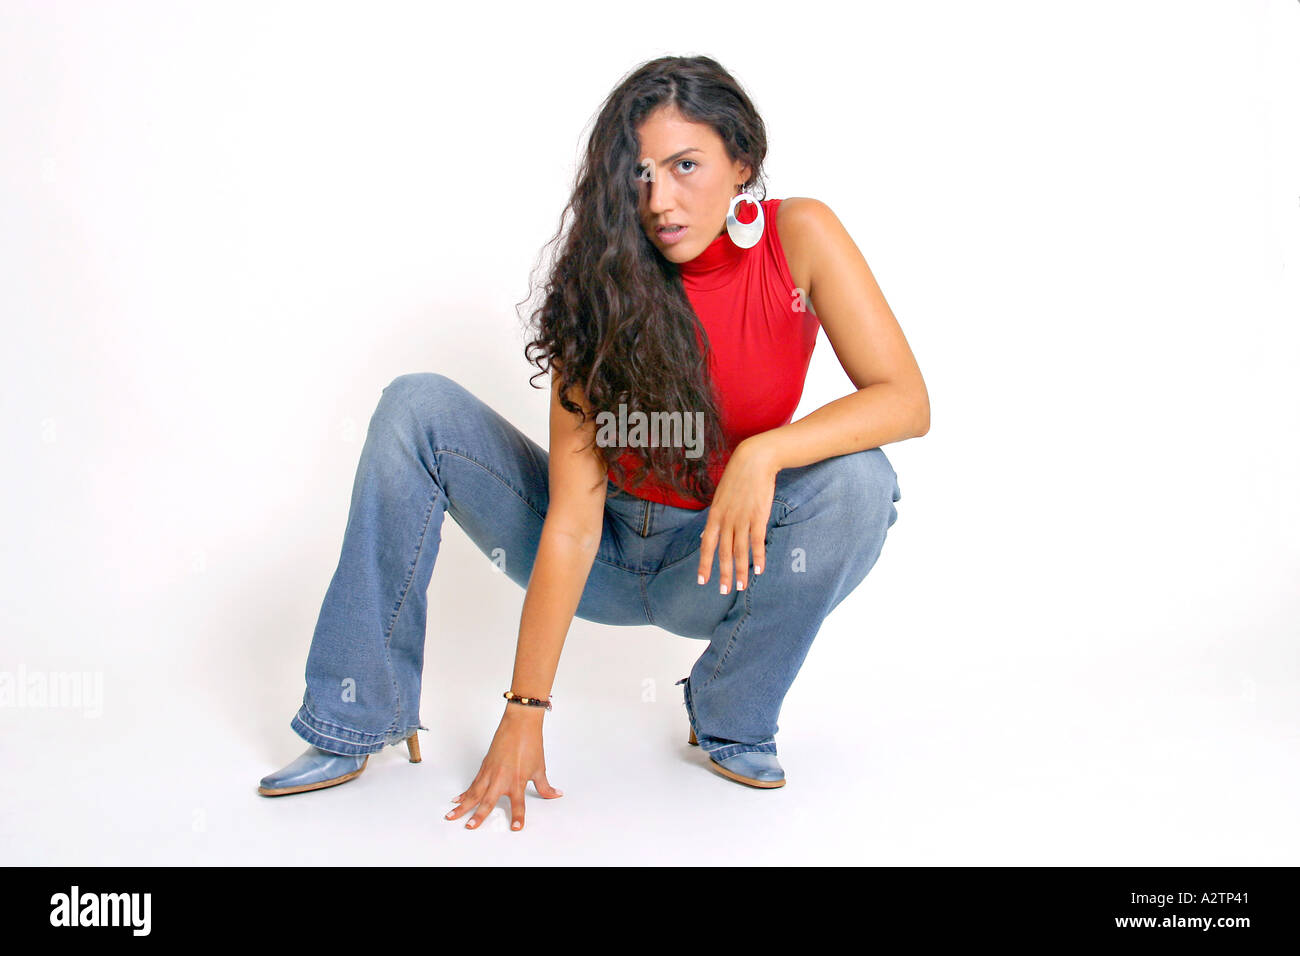 Vollen Schuss der Spanierin mit roten Top und Jeans hocken Stockfoto